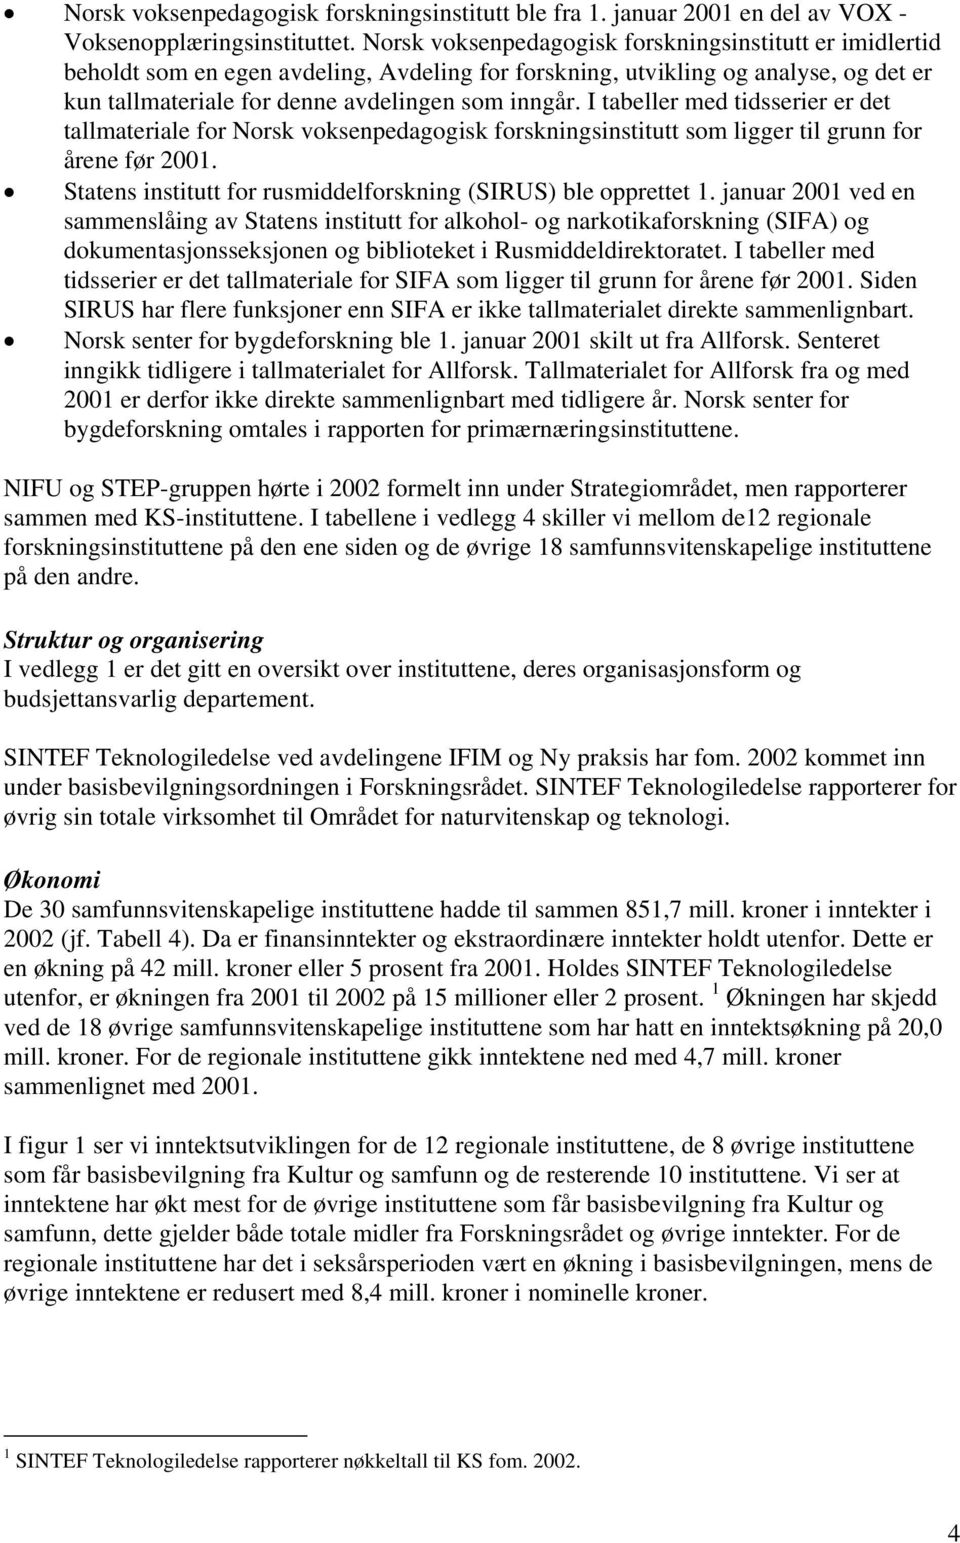 I tabeller med tidsserier er det tallmateriale for Norsk voksenpedagogisk forskningsinstitutt som ligger til grunn for årene før 2001. Statens institutt for rusmiddelforskning (SIRUS) ble opprettet 1.